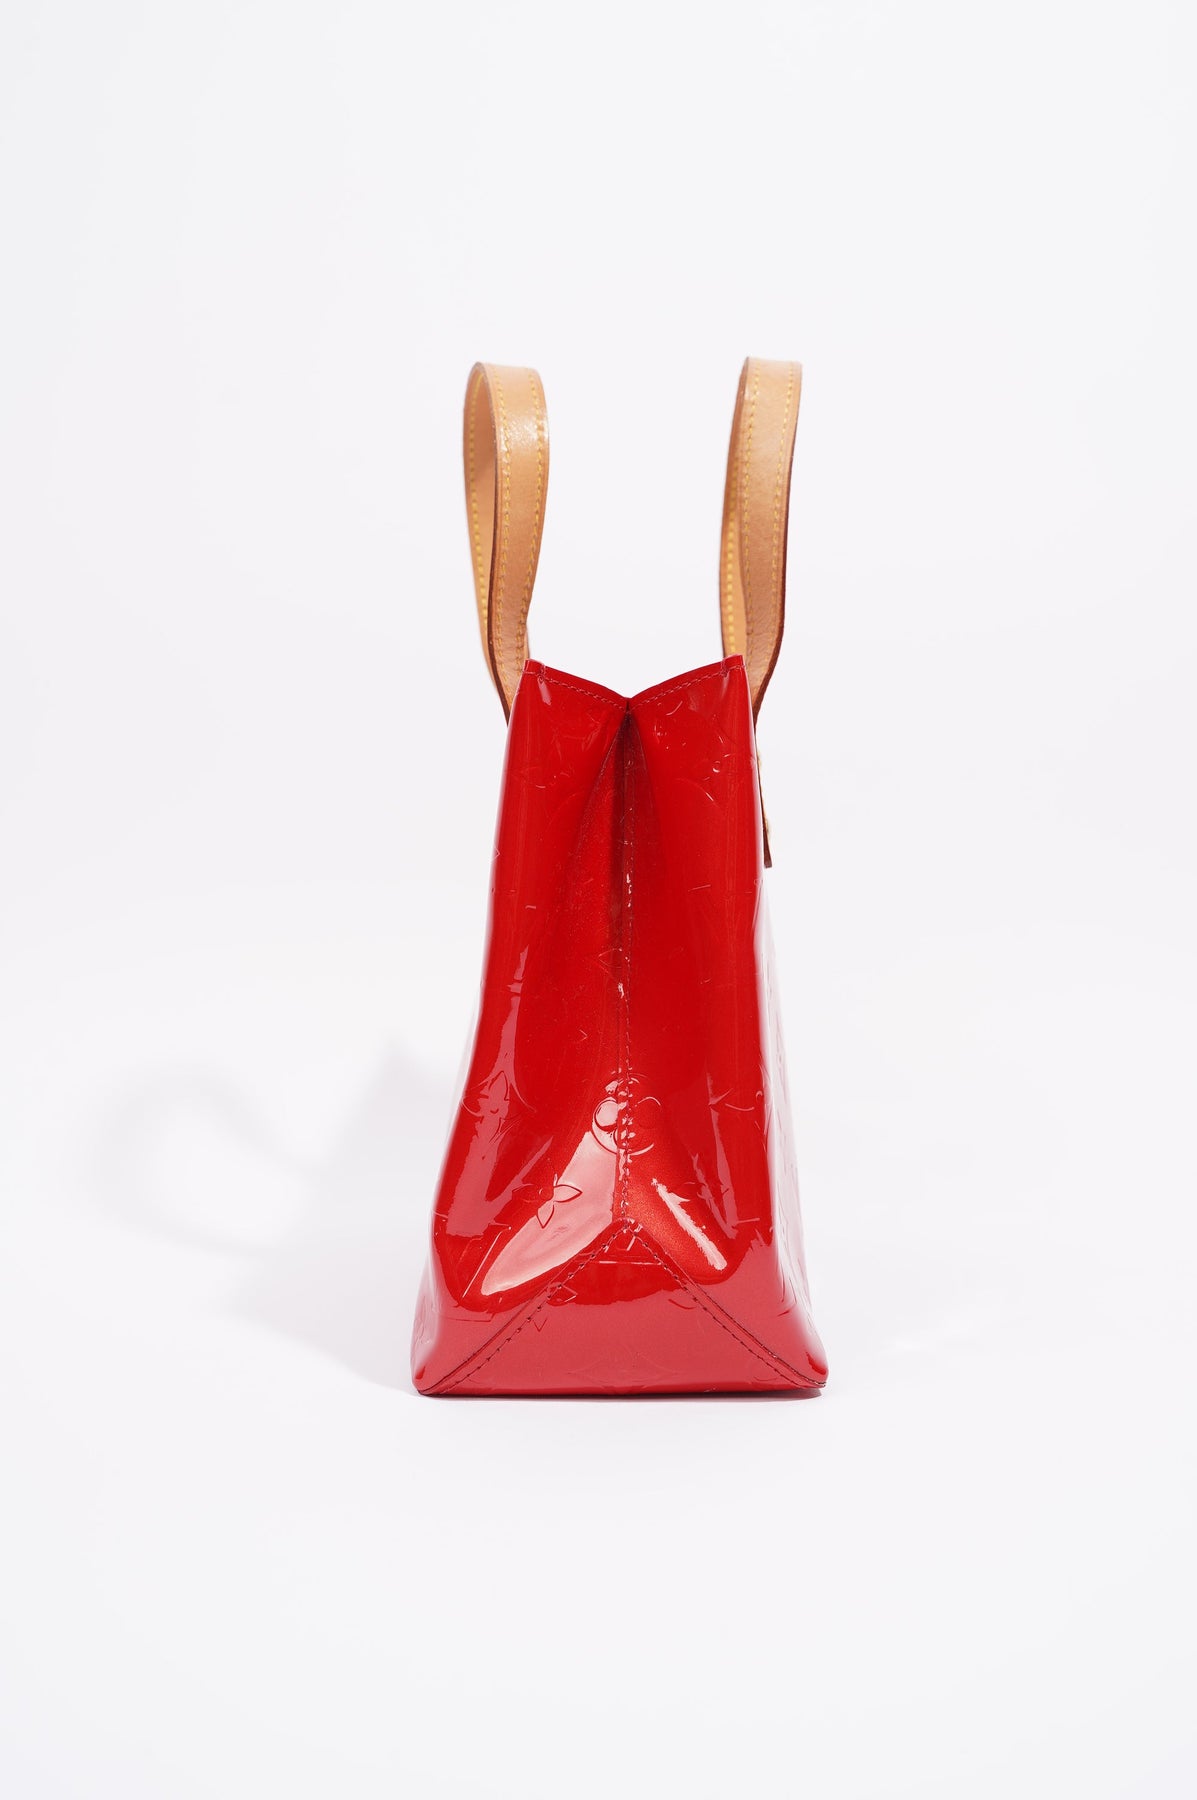 Louis Vuitton Louis Vuitton Rouge Red Vernis Leather Reade PM Handbag